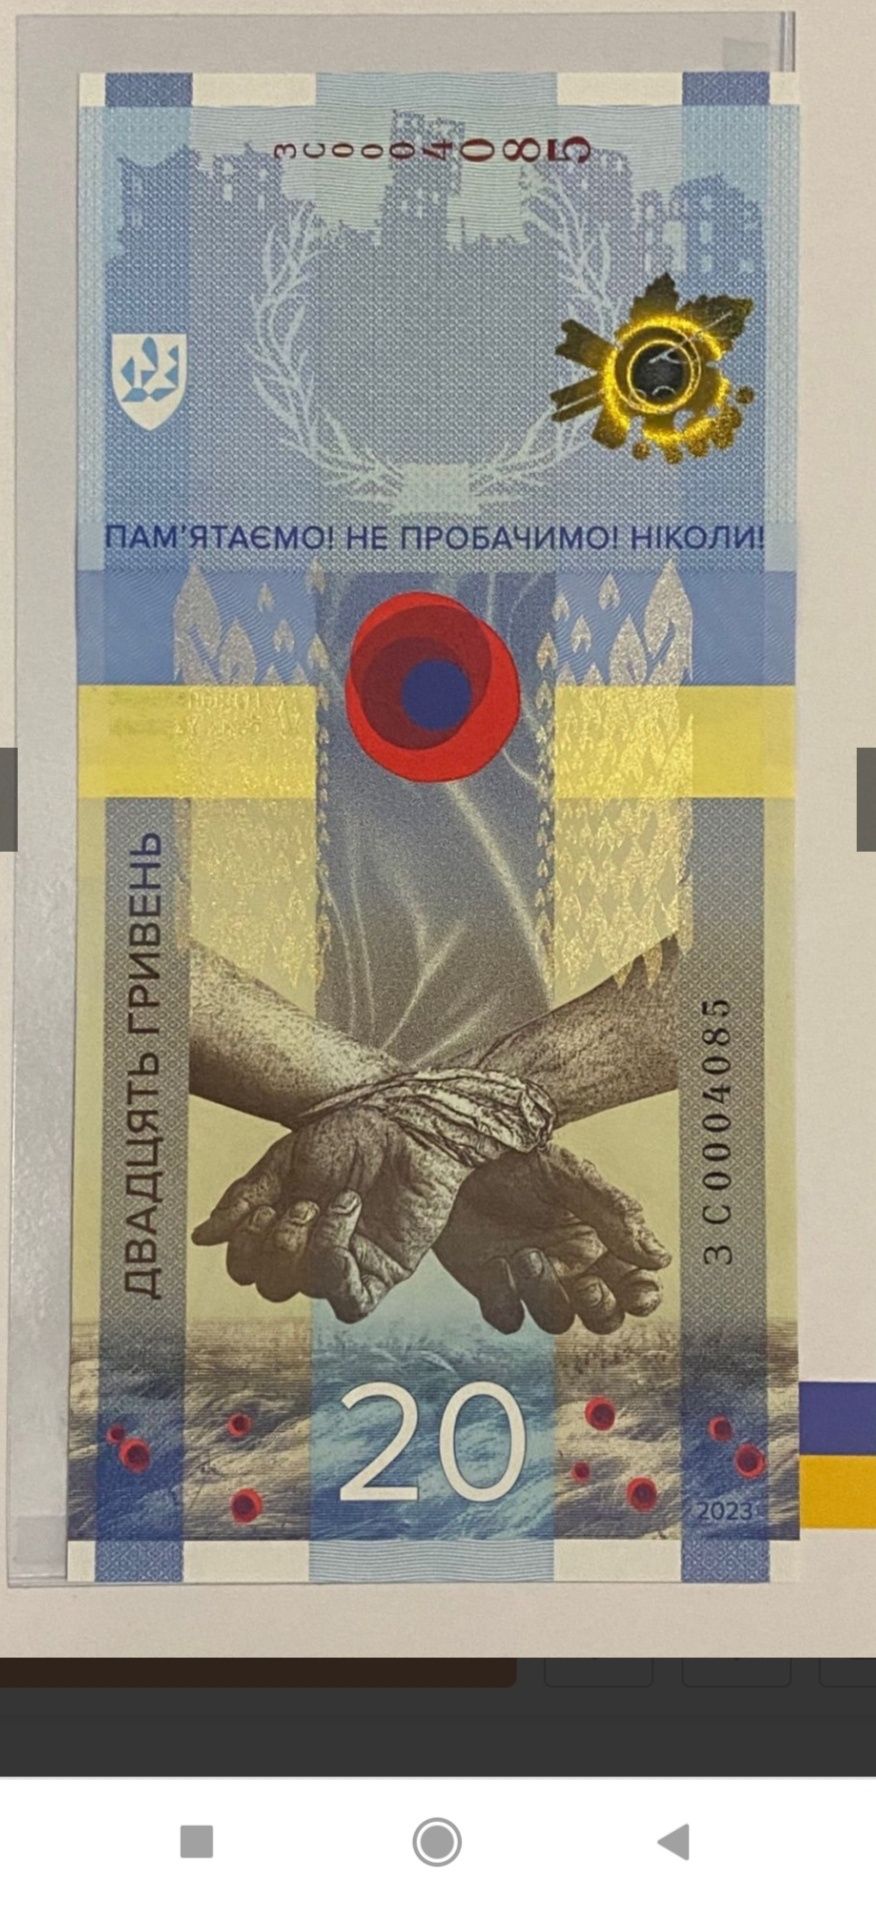 Пам’ятна банкнота 20 гривень "Пам’ятаємо! Не пробачимо!"